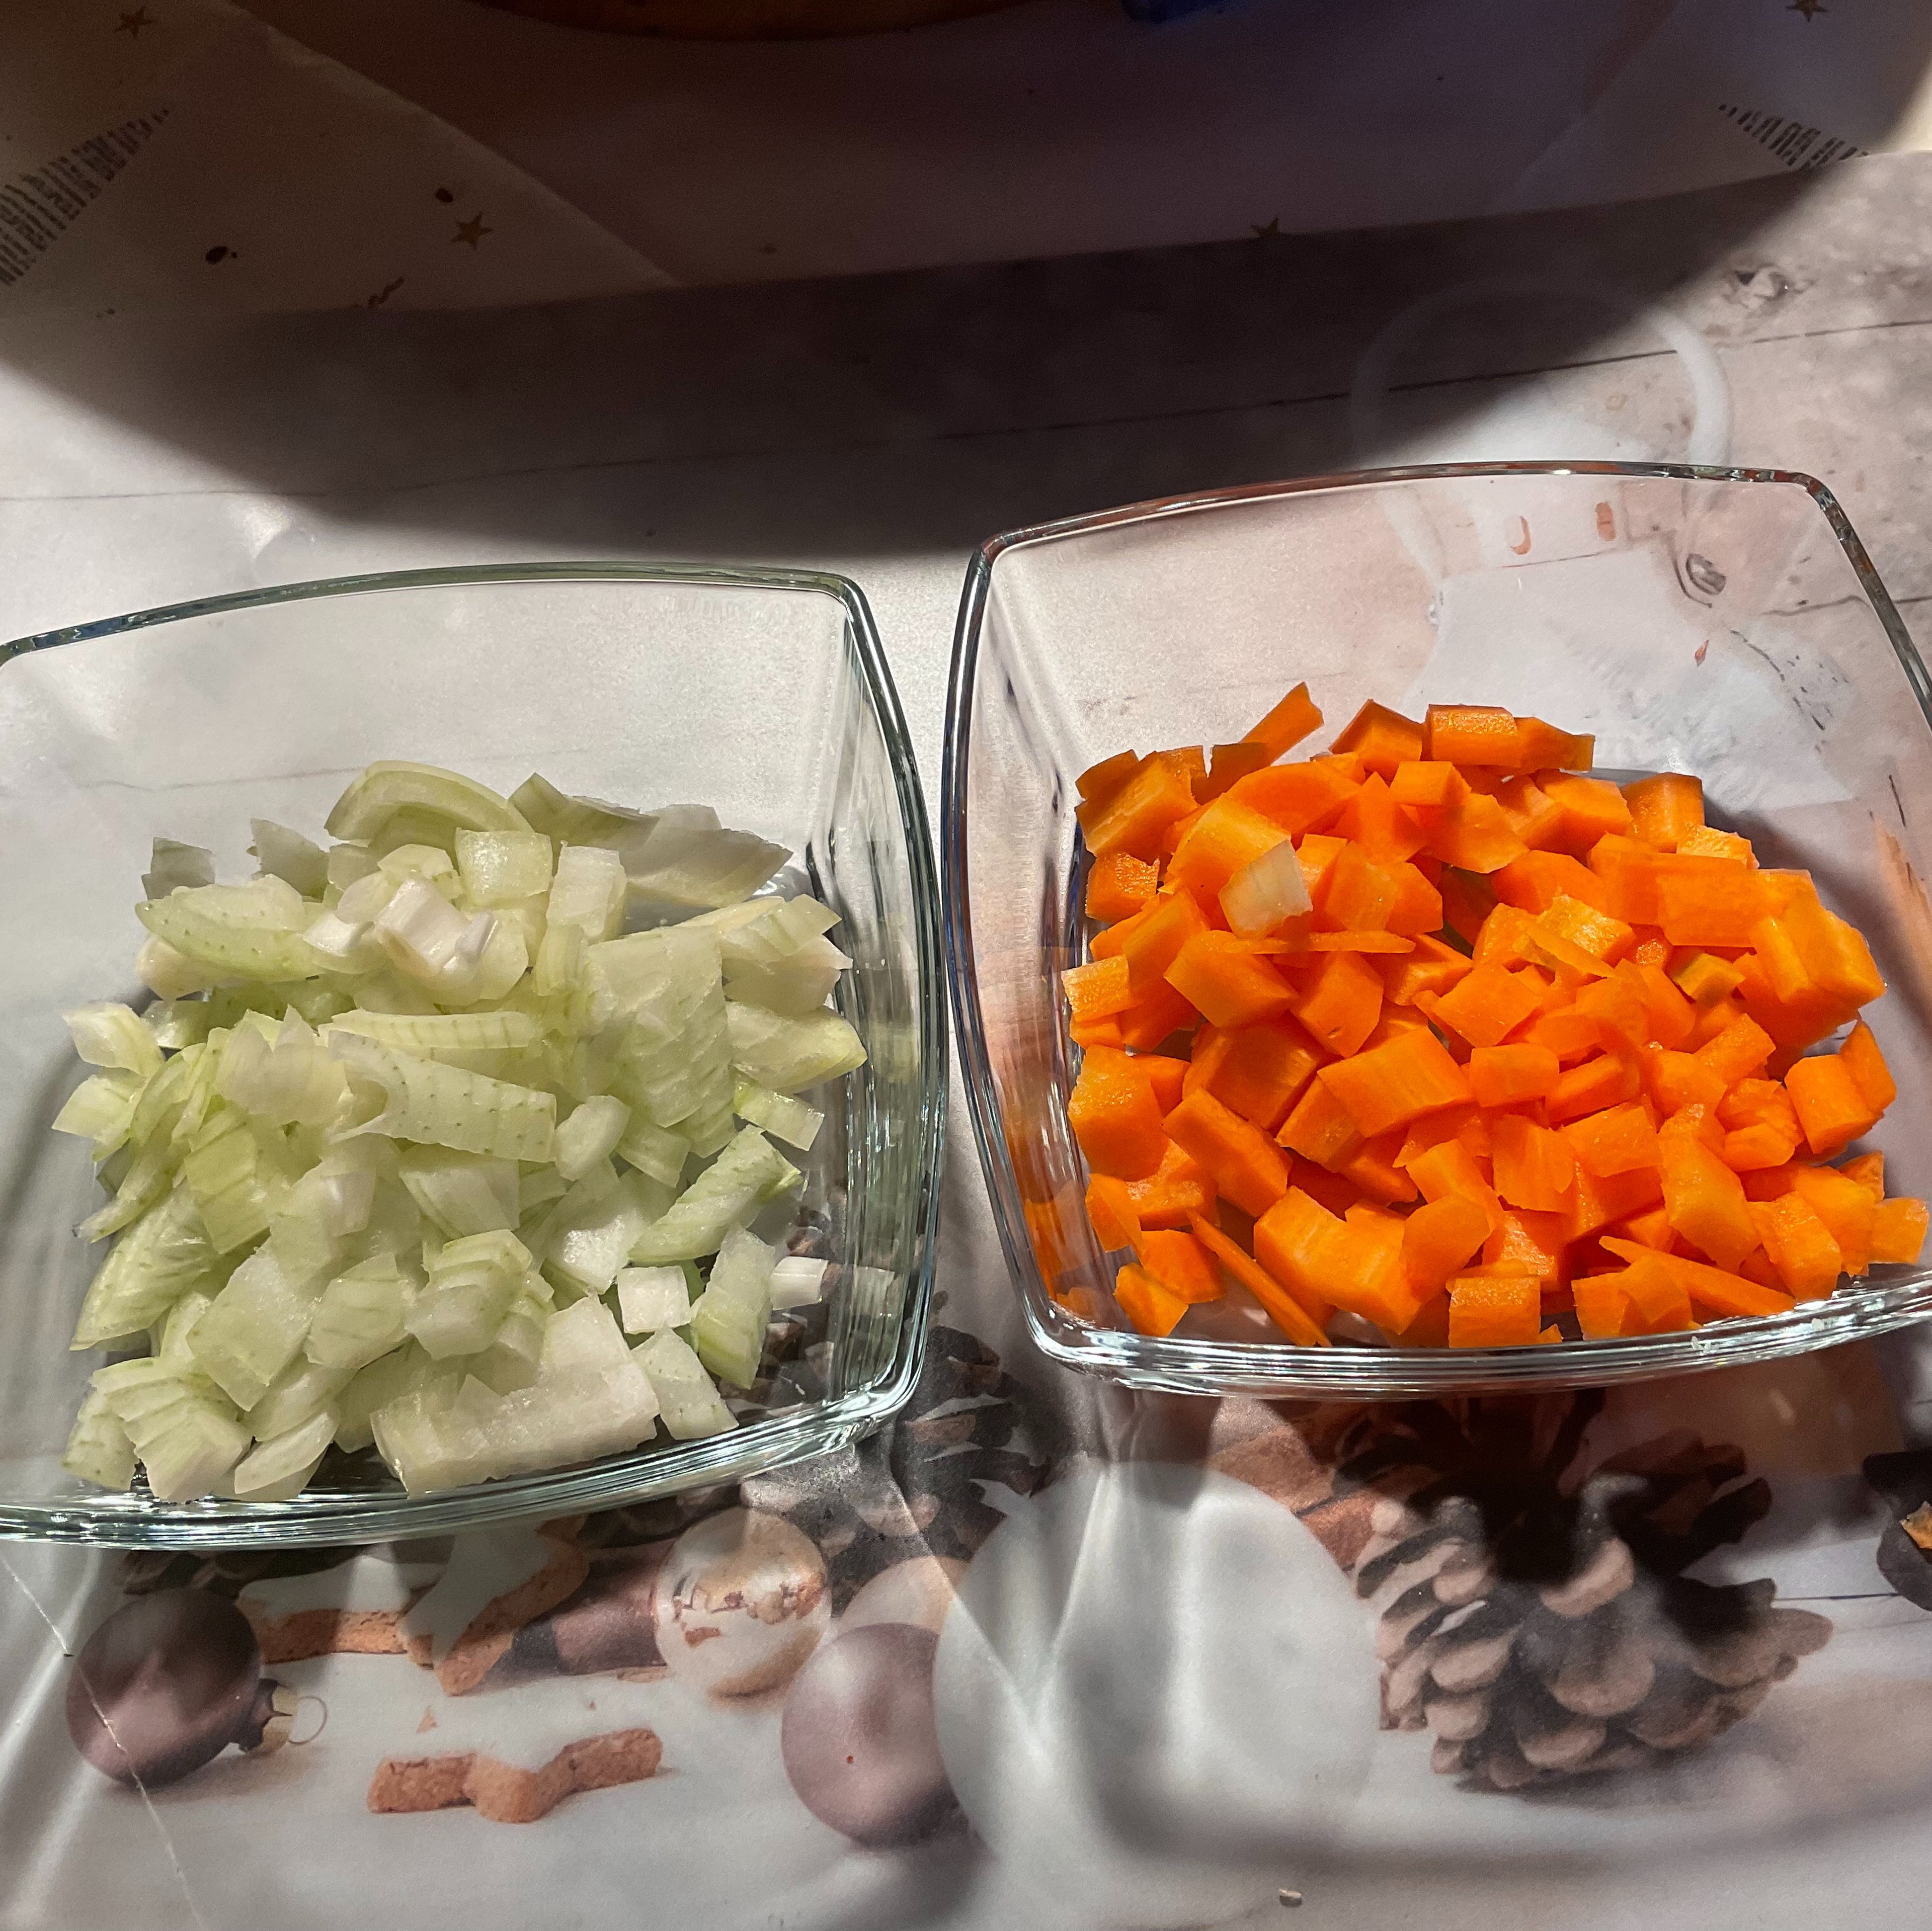 Zwischenzeitlich schäle und putze ich die Karotten und Zwiebeln und würfele sie in kleine Stücke.